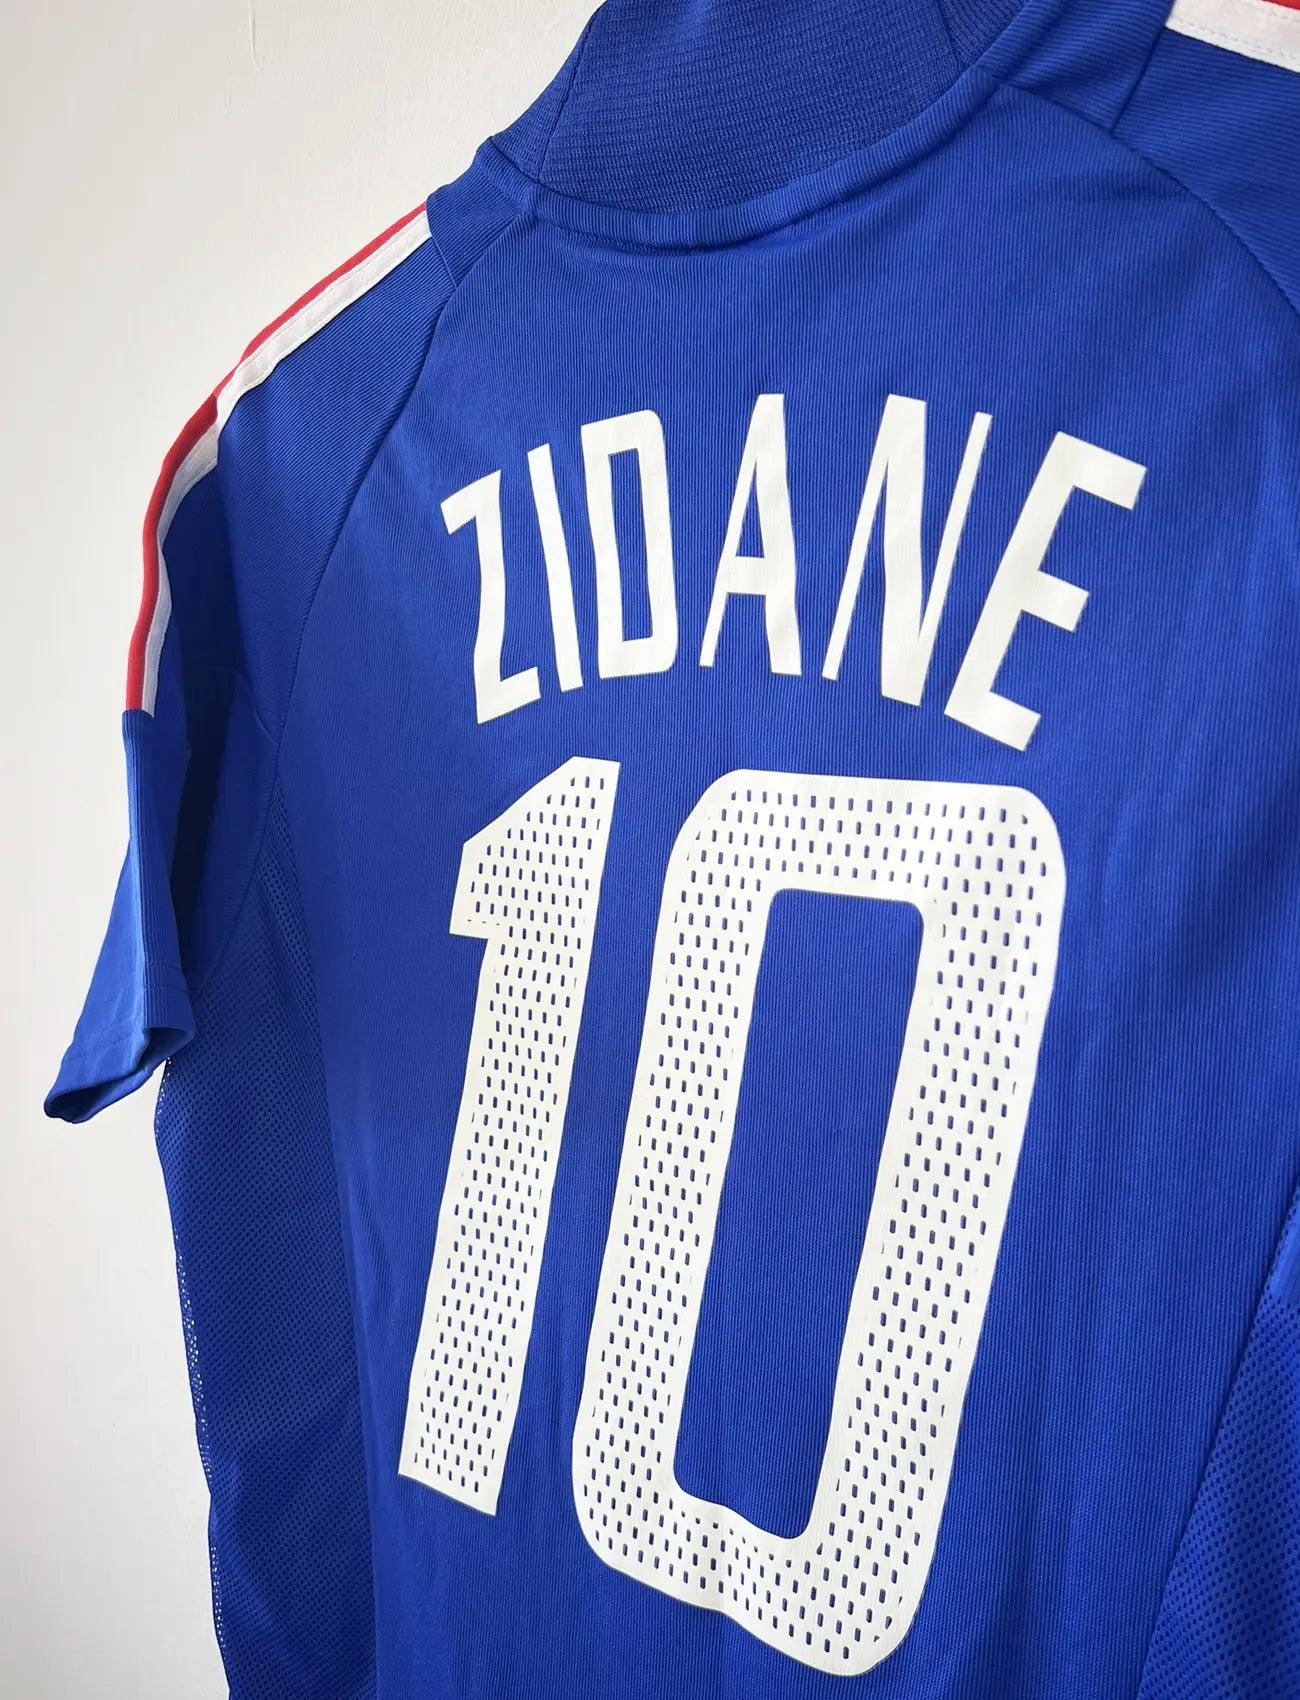 Maillot de foot vintage domicile de l'équipe de france 2002. Le maillot est de couleur bleu blanc et rouge. On peut retrouver l'équipementier adidas. Le maillot est floqué du numéro 10 Zinedine Zidane. Il s'agit d'un maillot authentique d'époque comportant les numéros 139531.